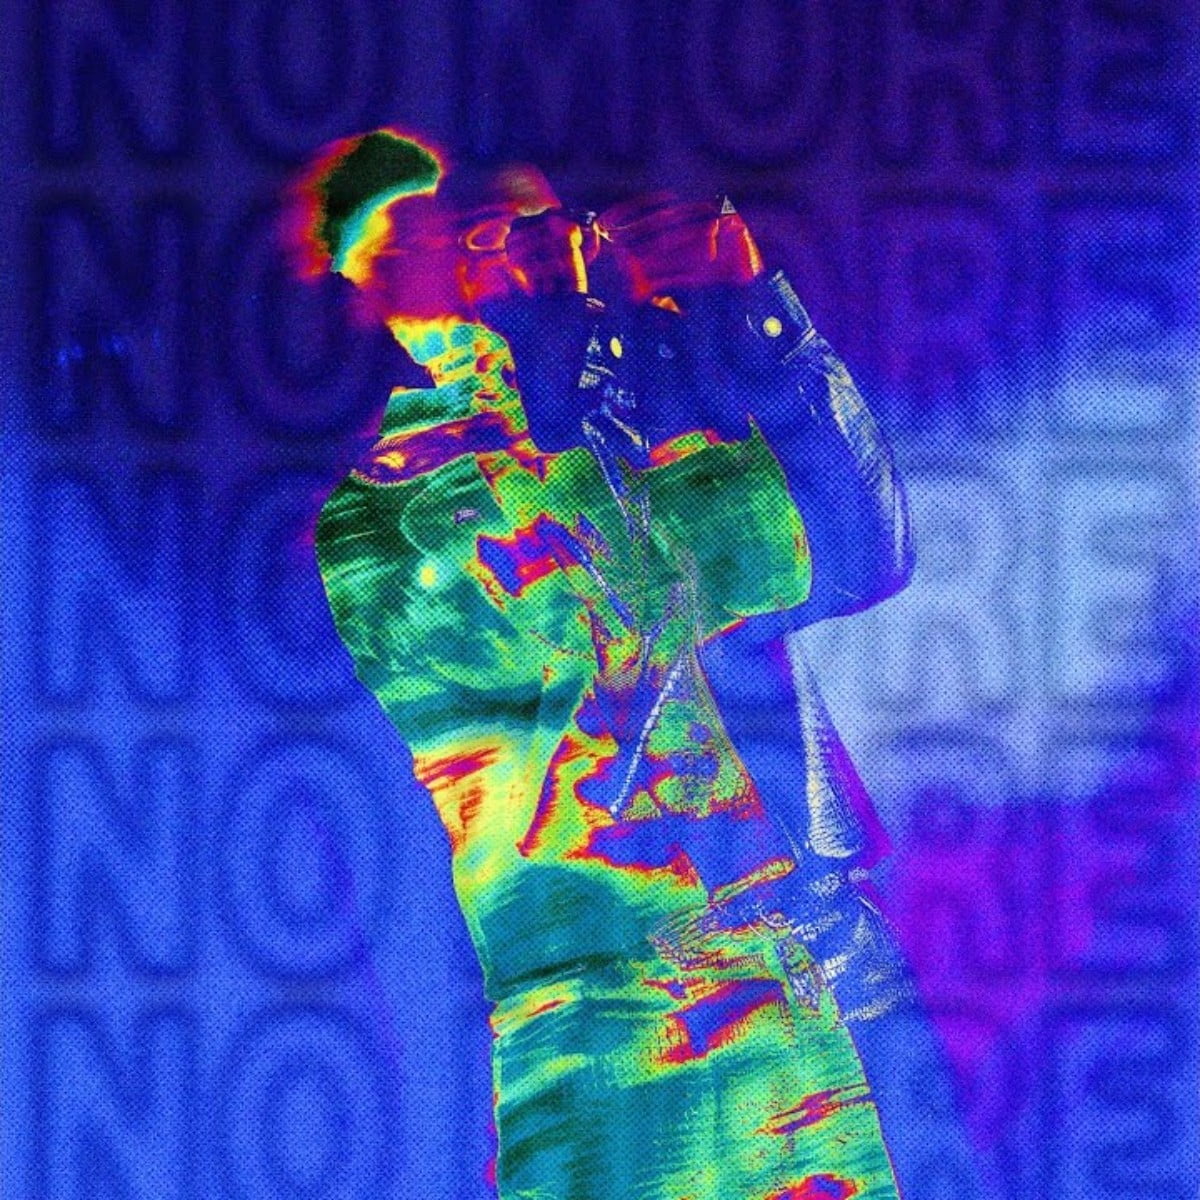 Nasty C – No More mp3 download free lyrics